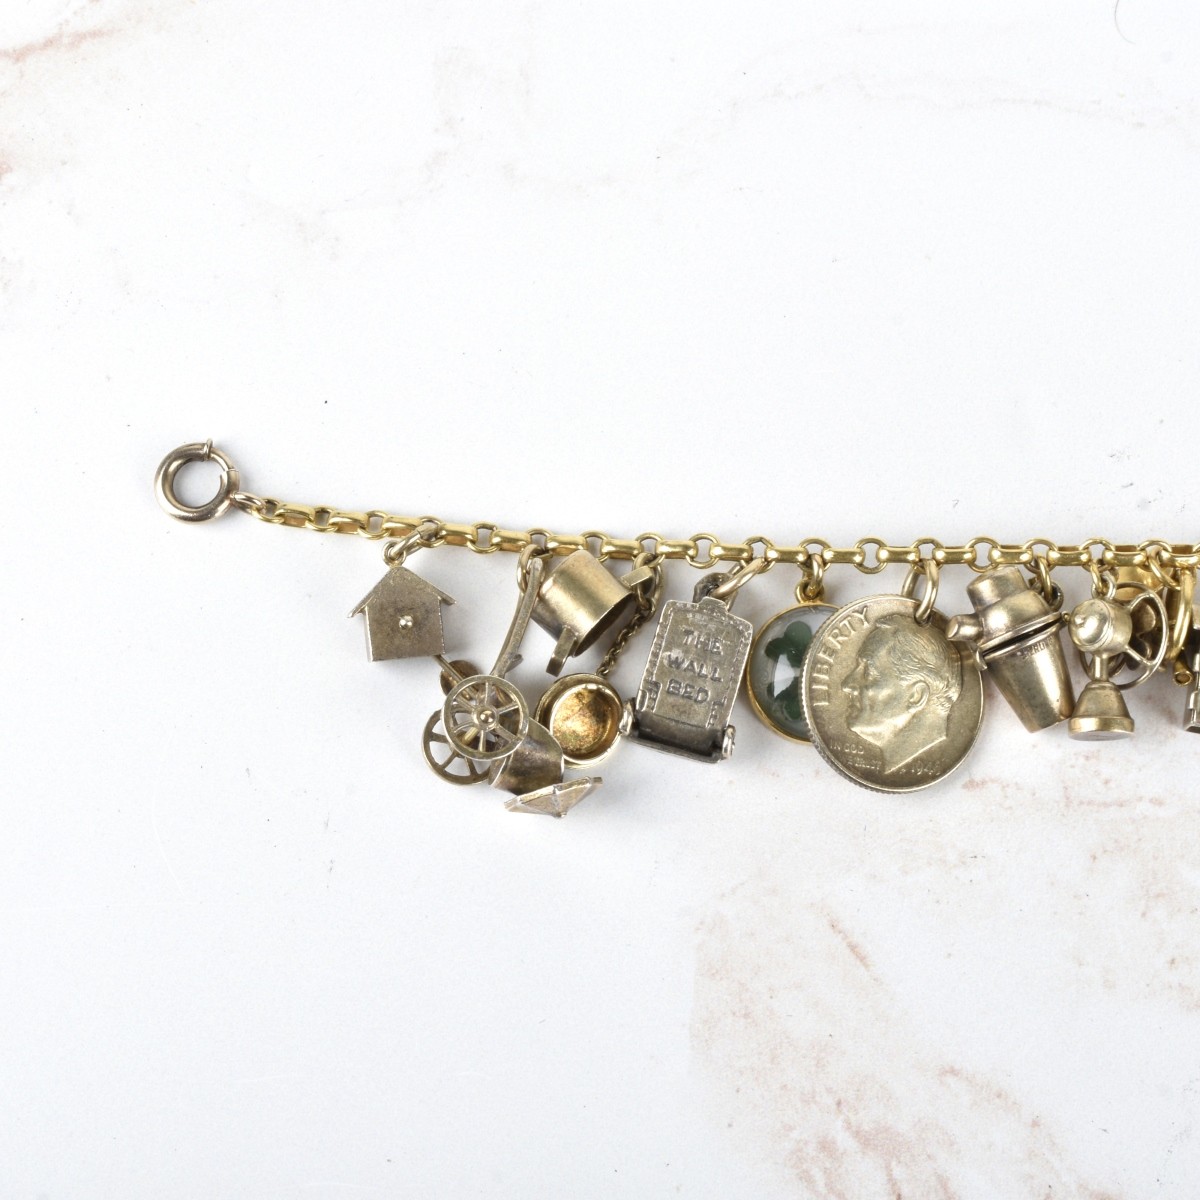 Antique Charm Bracelet